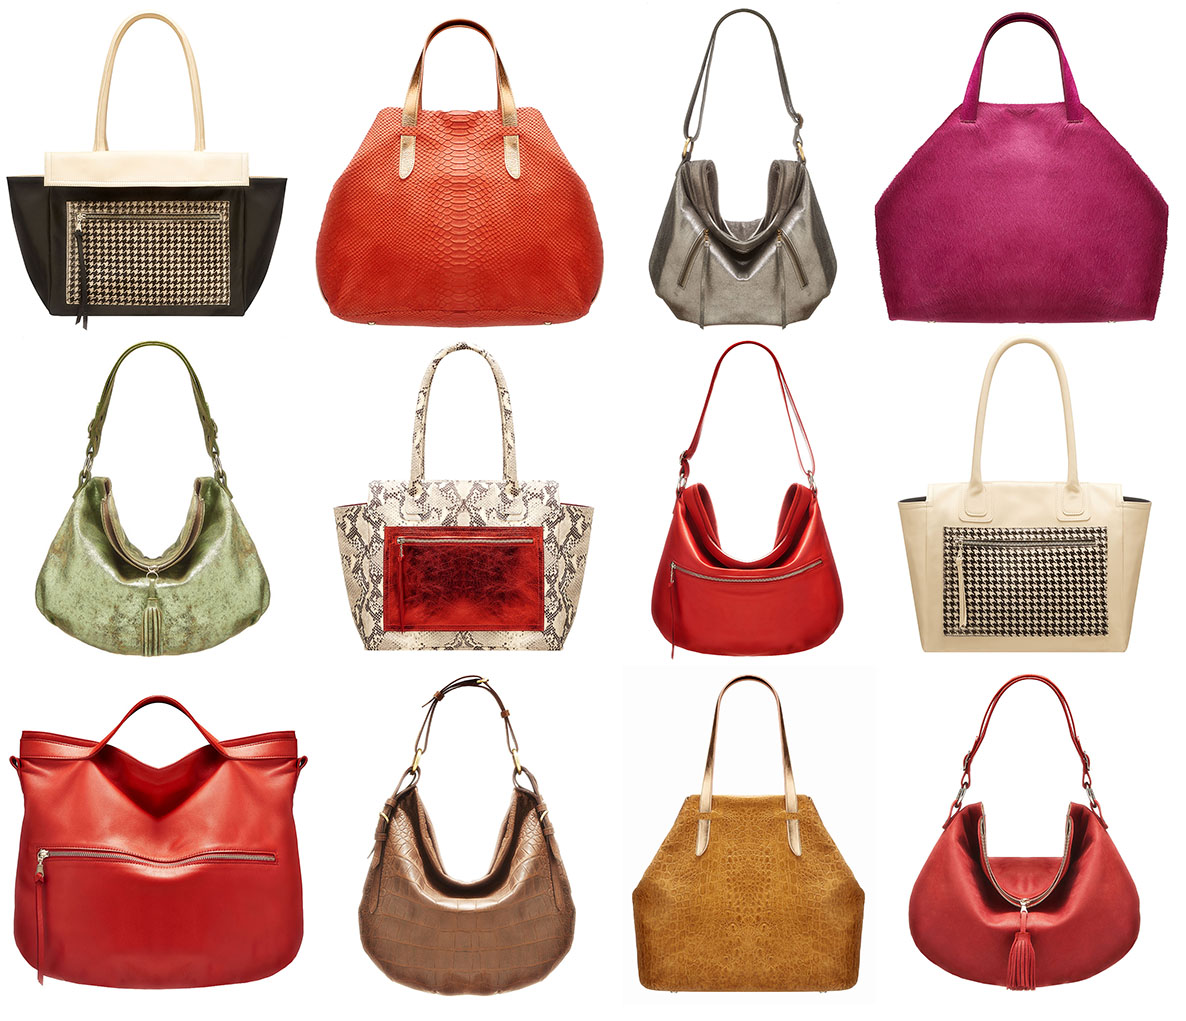 La collection 2015 des sacs à main Lilù, 9 rue du Bailli à 1050 Bruxelles, des sacs en cuir élégants pour les femmes 100% made in Belgium.